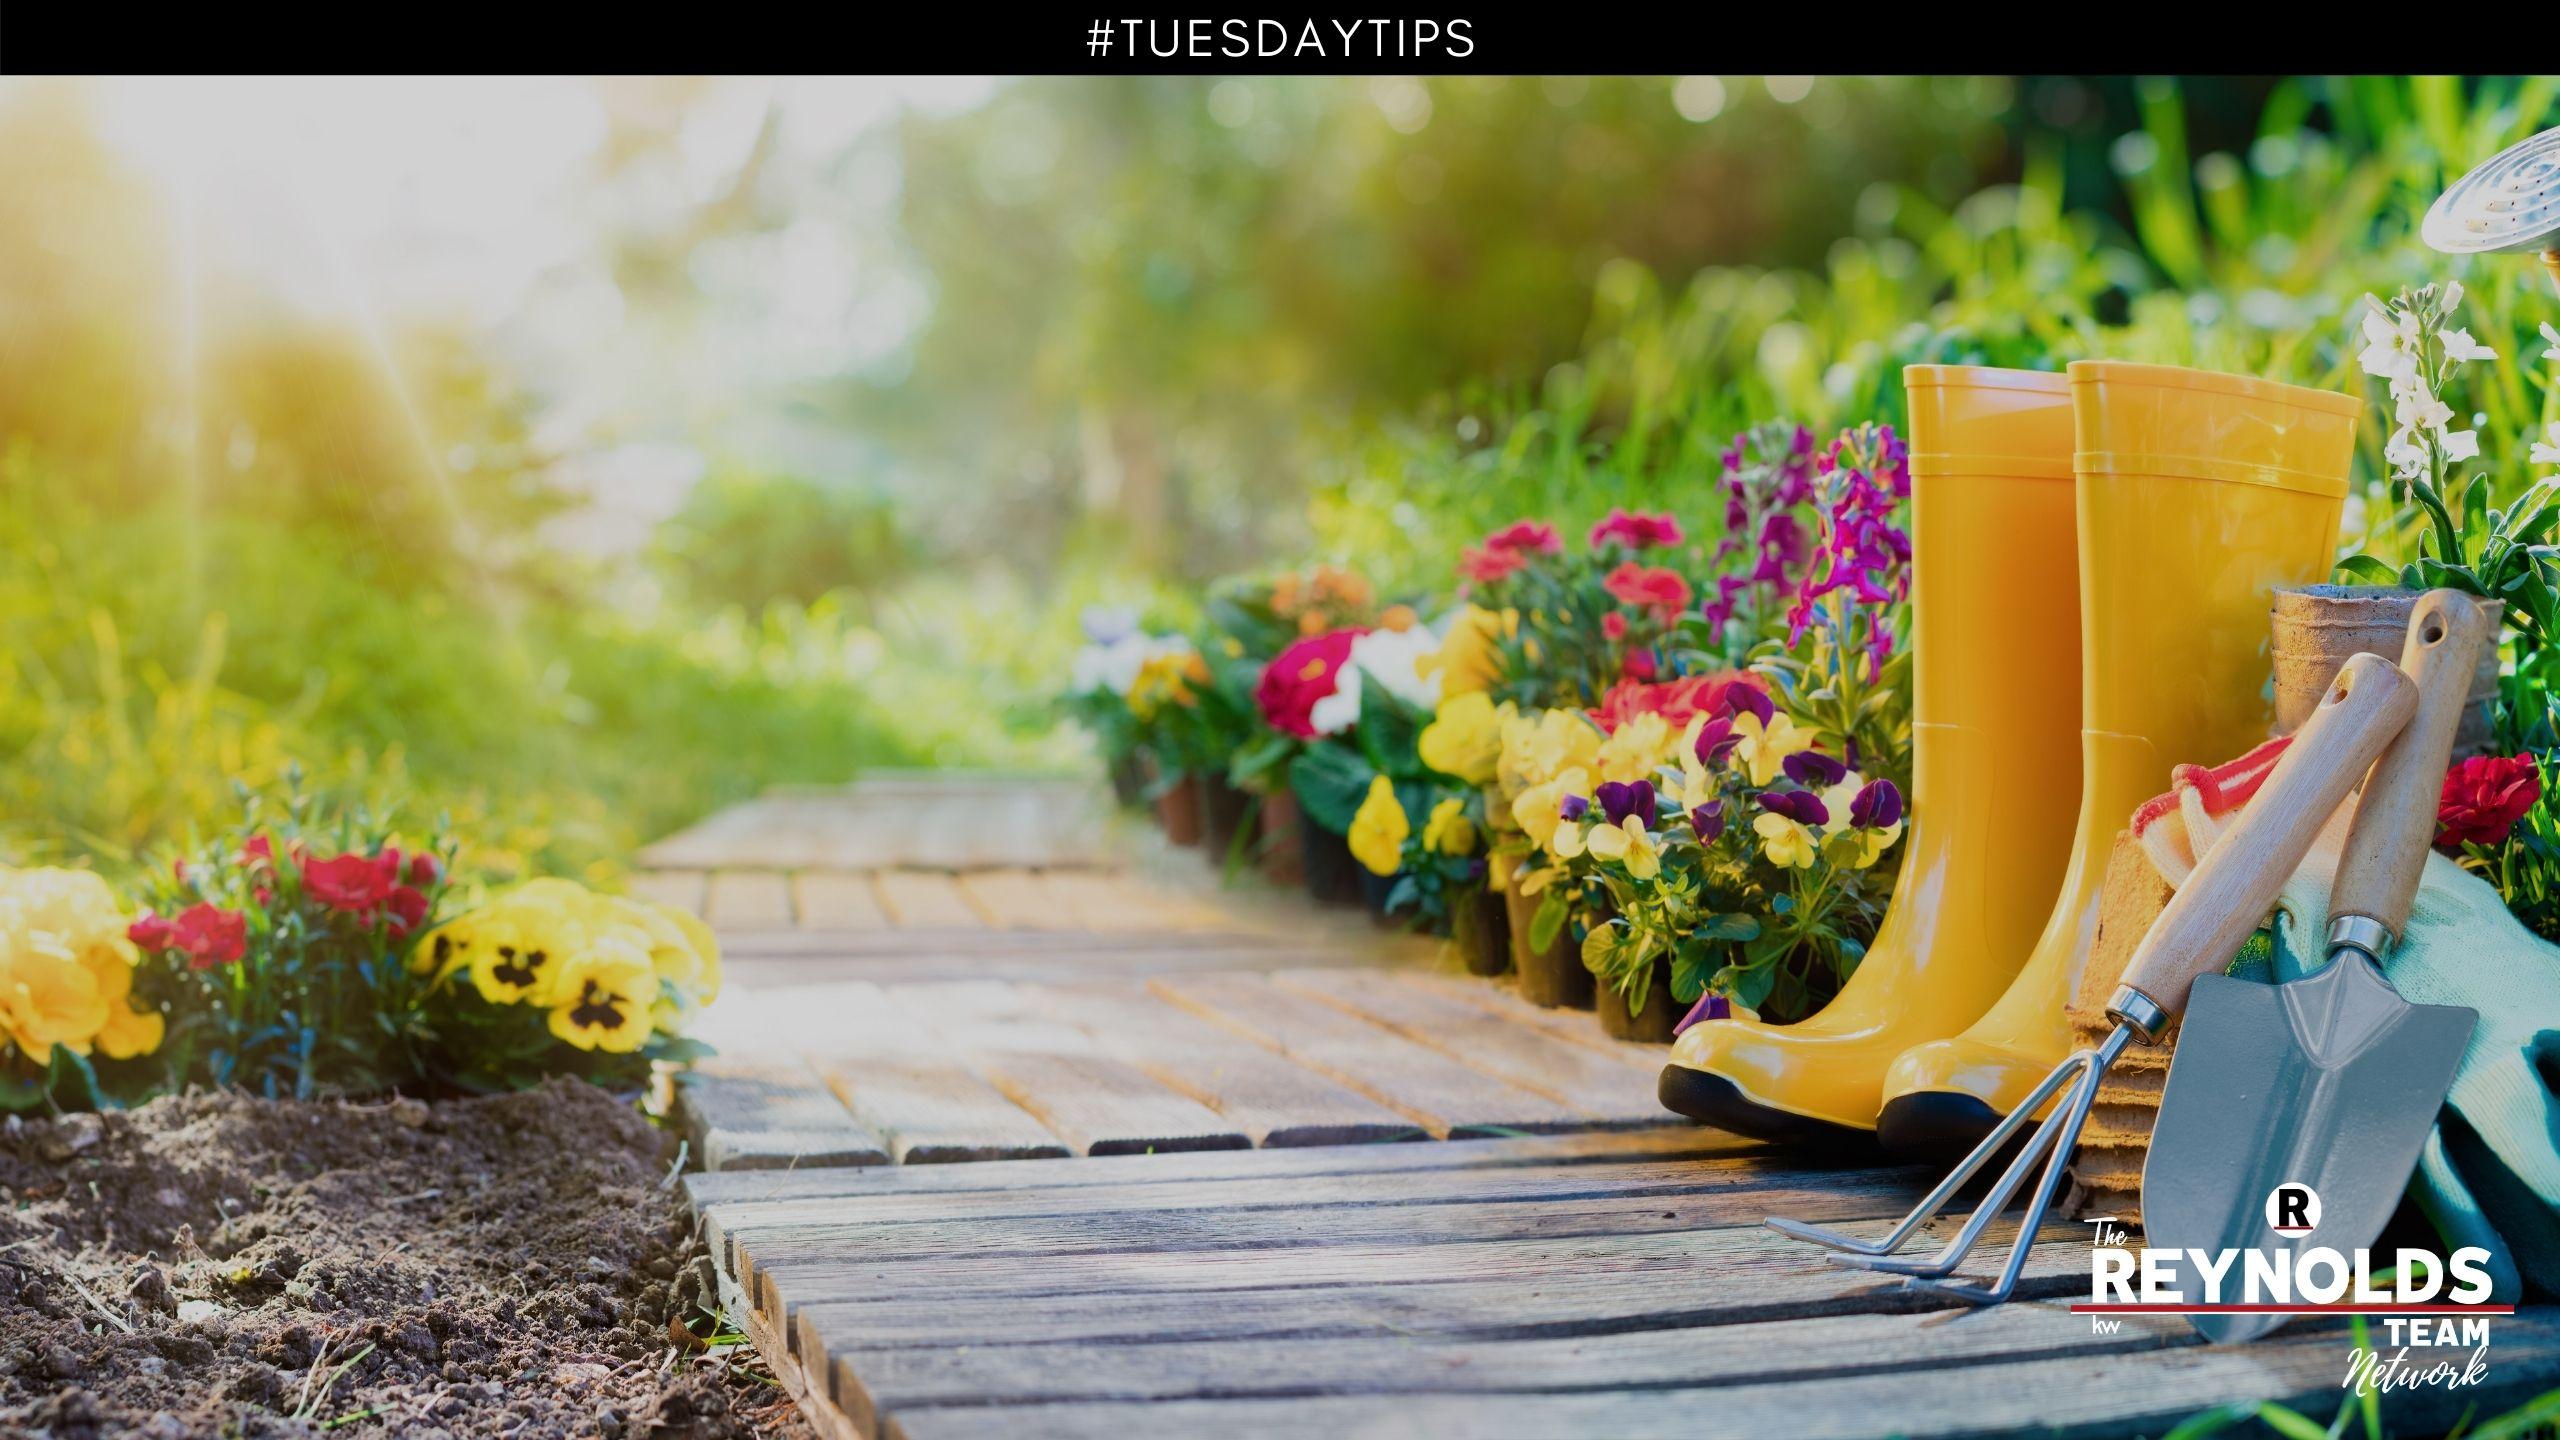 Tuesday Tips: Make a Garden Plan